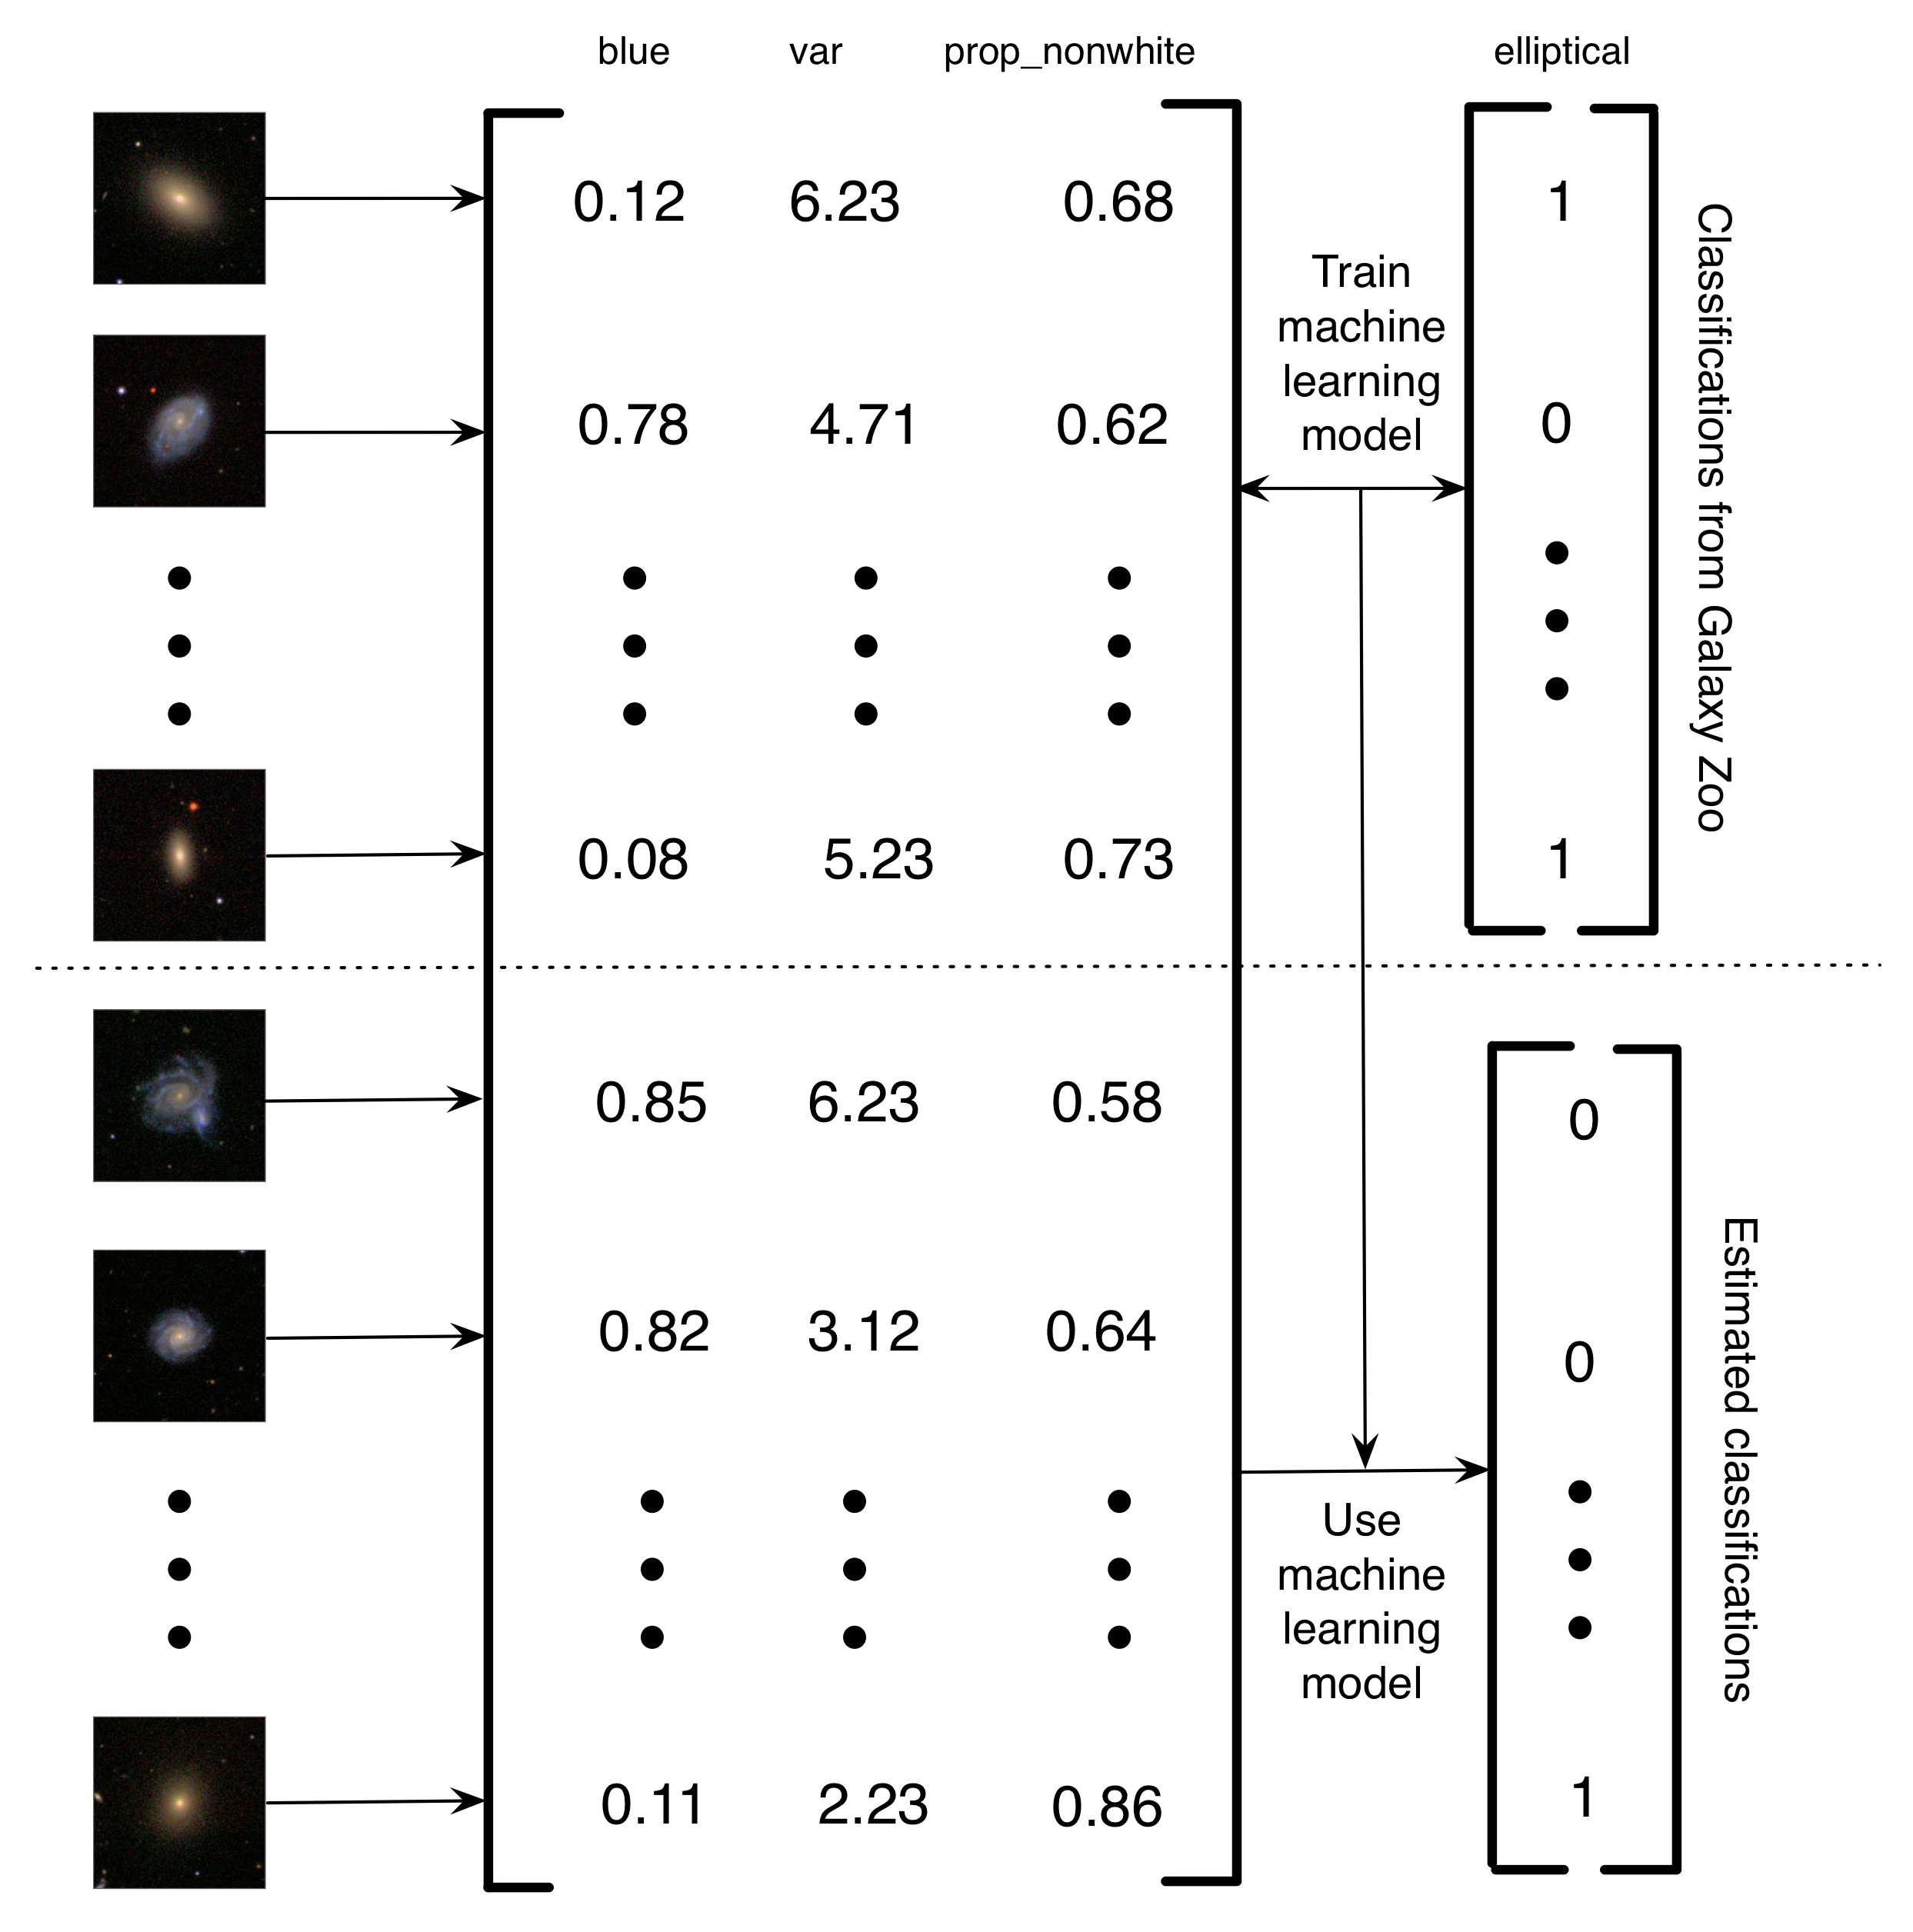 Slika 5.4: Pojednostavljeni opis kako Banerji et al. (2010) koristio je klasifikaciju Galaxy Zooa kako bi osposobio model strojnog učenja za klasifikaciju galaksije. Slike galaksija pretvorene su u matricu značajki. U ovom pojednostavljenom primjeru postoje tri značajke (količina plave boje na slici, varijacija u svjetlini piksela i omjer nefijelih piksela). Zatim, za podskup slike, oznake Galaxy Zoo koriste se za osposobljavanje modela strojnog učenja. Konačno, učenje stroja koristi se za procjenu klasifikacija preostalih galaksija. Zovem to računalno potpomognuto računalno projekt jer, umjesto da ljudi rješavaju problem, ljudi su izgradili skup podataka koji se može koristiti za podučavanje računala za rješavanje problema. Prednost ovog računala računalno potpomognutog računalnog sustava je da vam omogućuje obradu bitno beskonačnih količina podataka koristeći samo konačnu količinu ljudskog napora. Slike galaksija reproducirane dopuštenjem Sloan Digital Sky Survey.